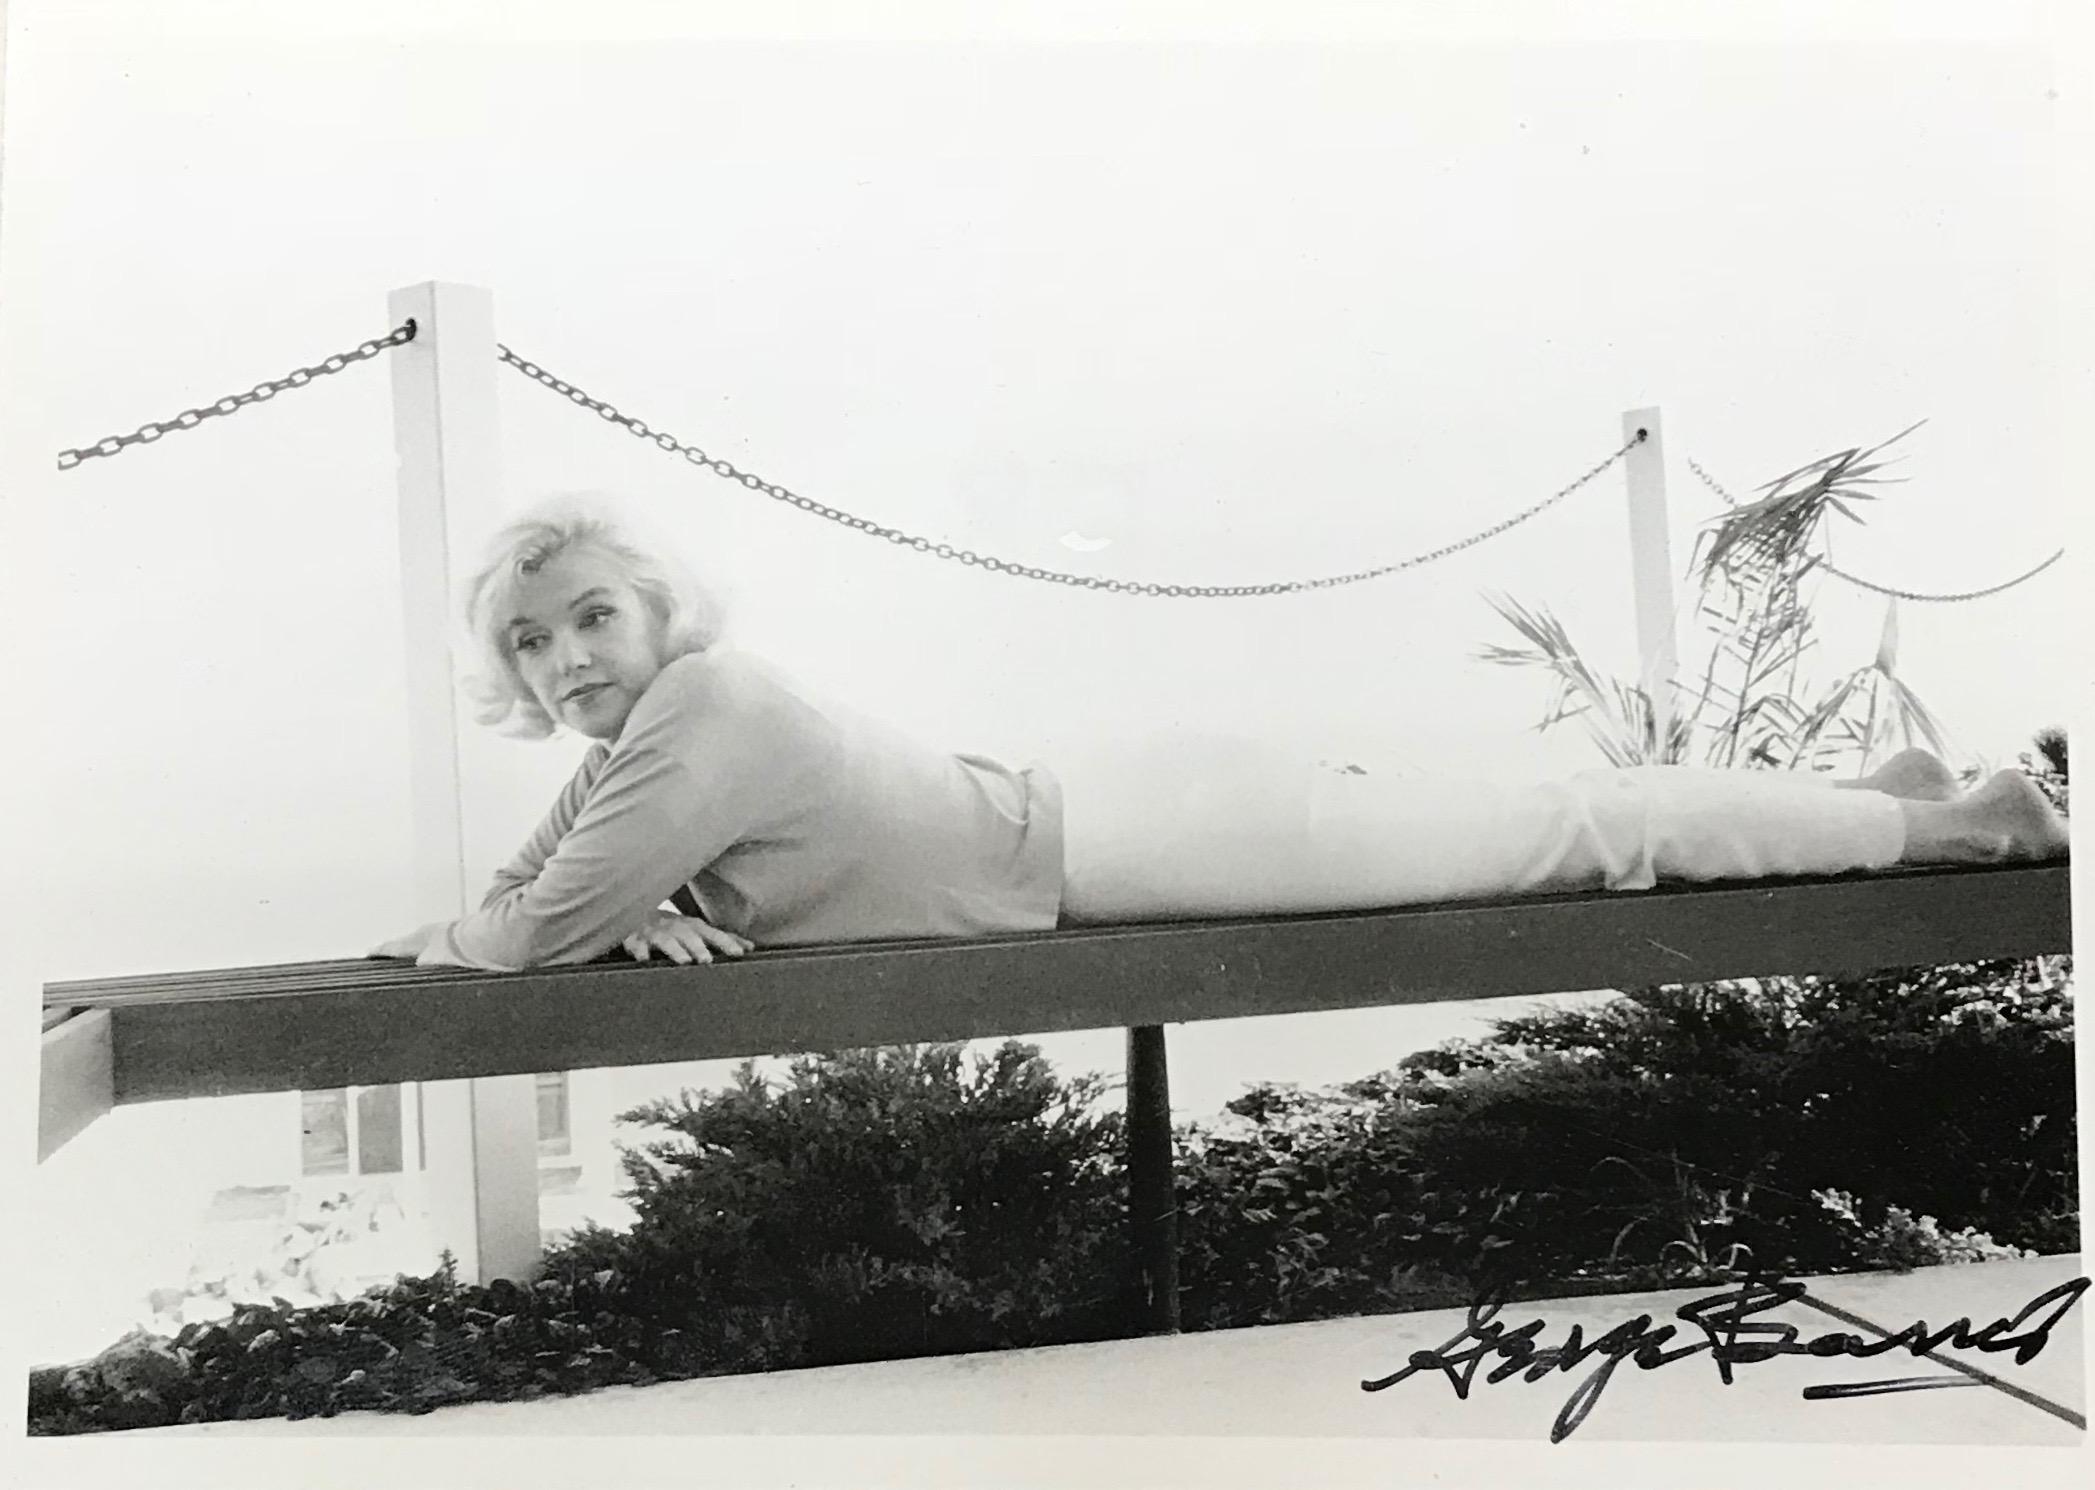 Bei diesem Werk handelt es sich um ein Triptychon aus drei Originalfotografien, die 1962 von George Barris aufgenommen und später gedruckt wurden. Diese Fotos von Marilyn Monroe sind Teil einer Serie mit dem Titel 